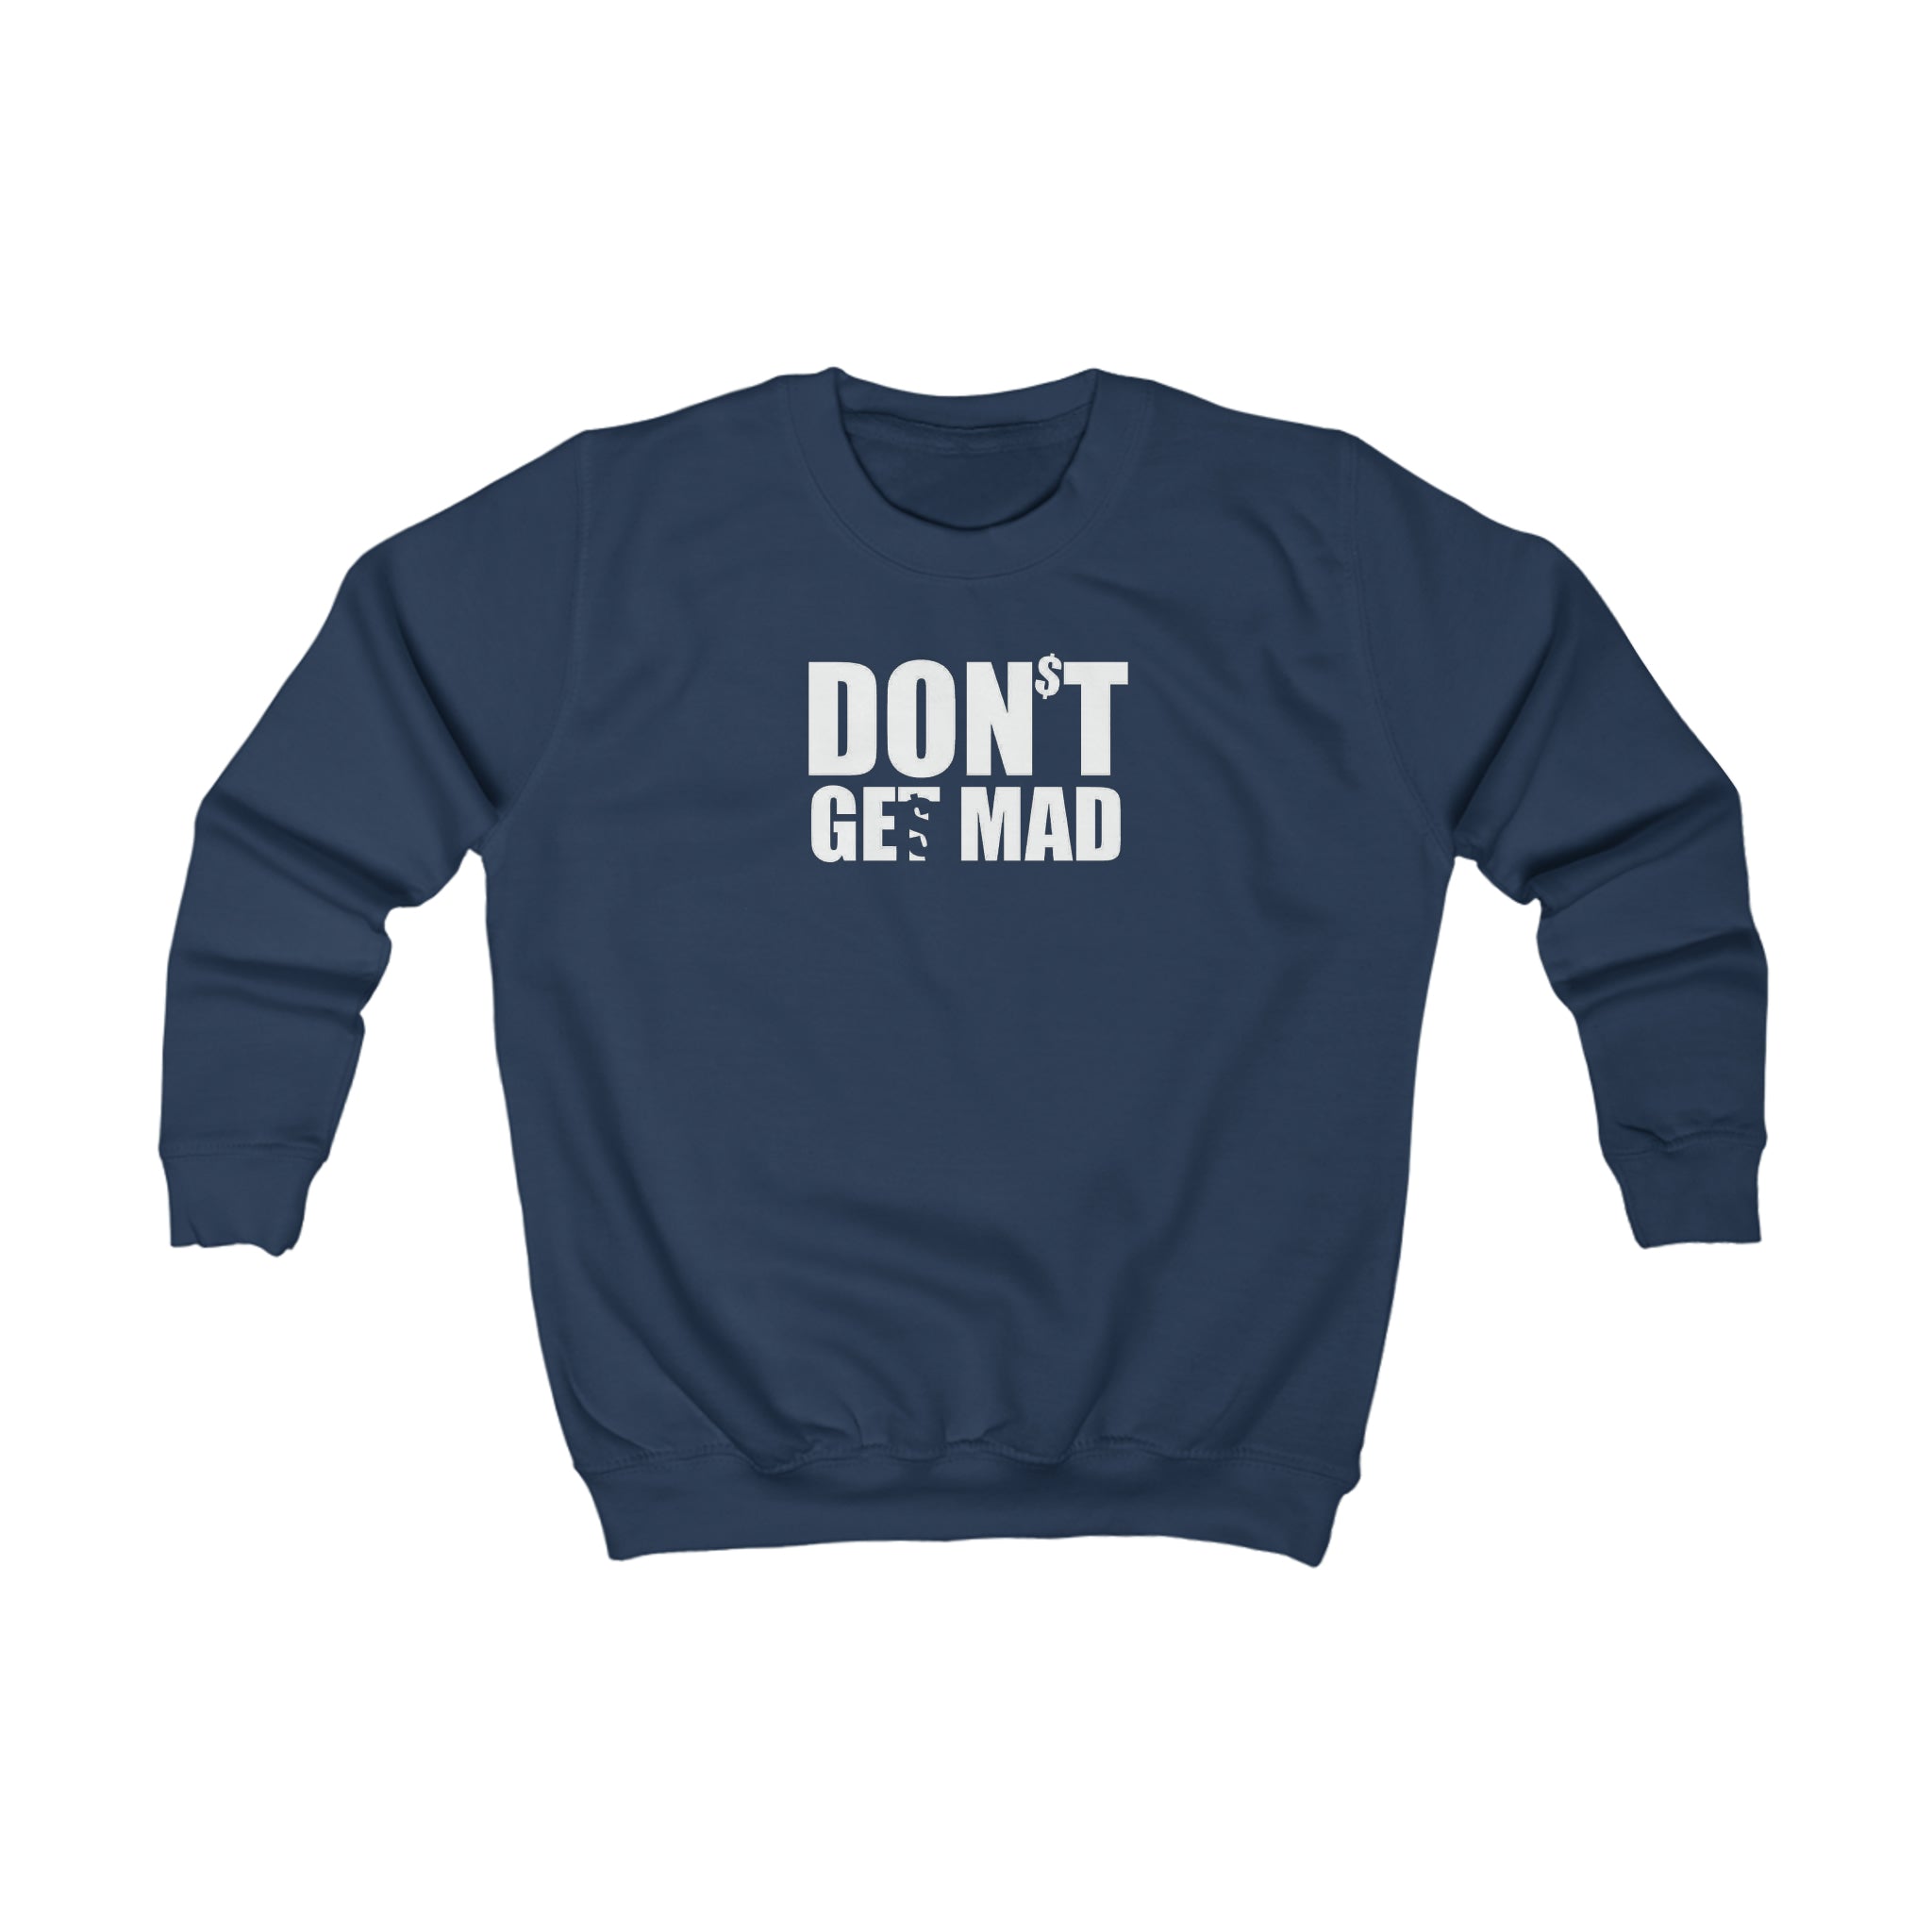 GET$ Kids Sweatshirt